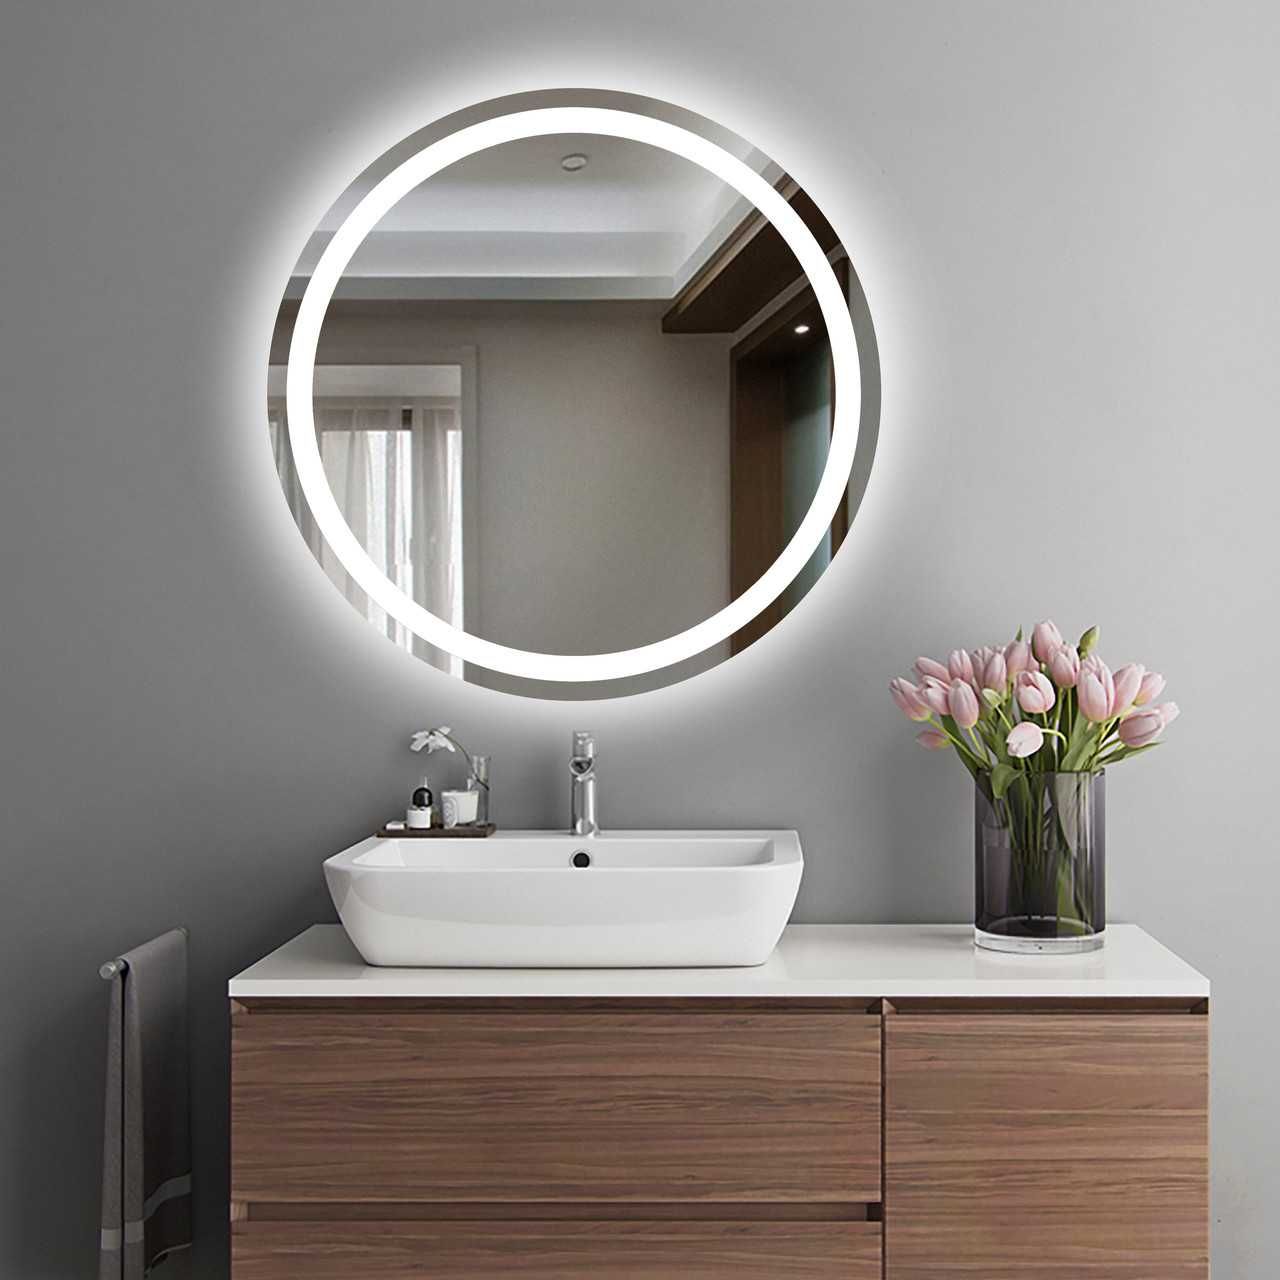 Зеркало с Лед подсветкой для ванной. Изготовление зеркал под заказ.